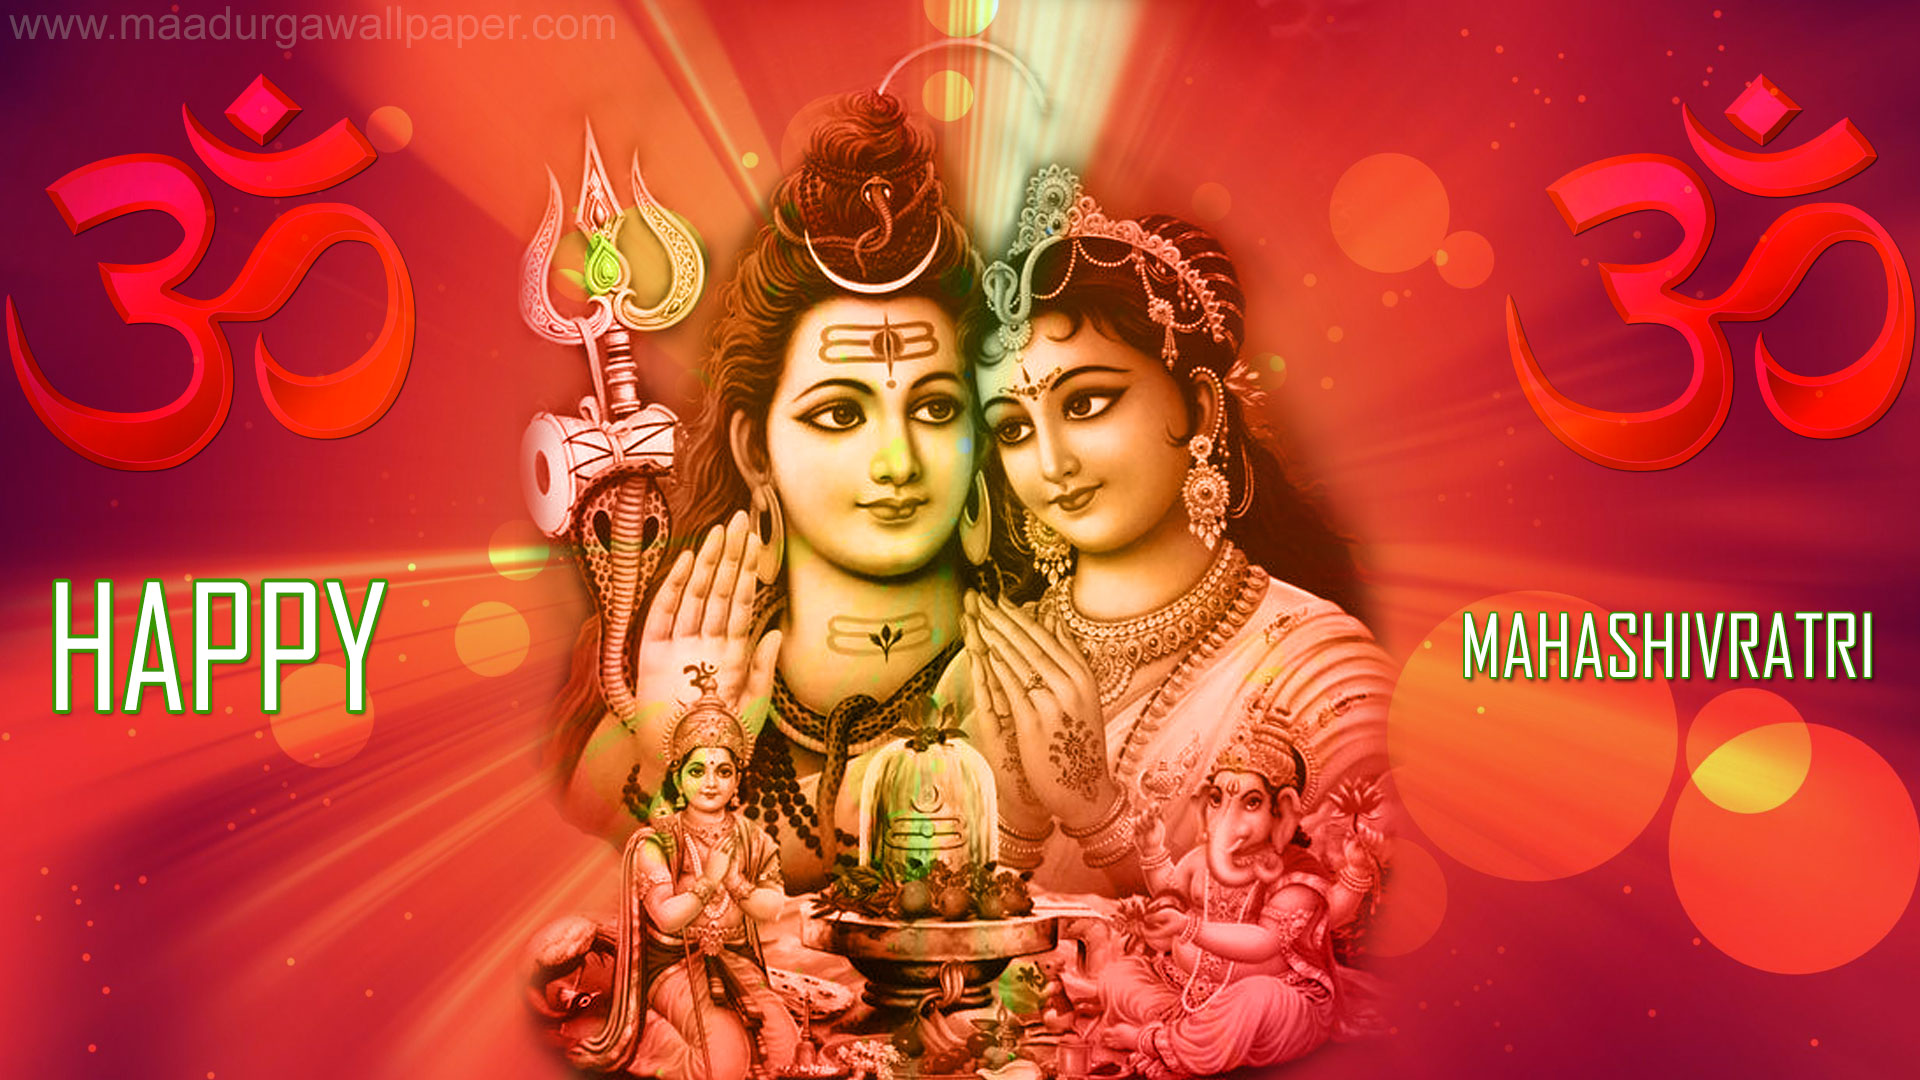 Mahashivratri Wallpaper - Happy Mahashivratri Shiv Parvati , HD Wallpaper & Backgrounds